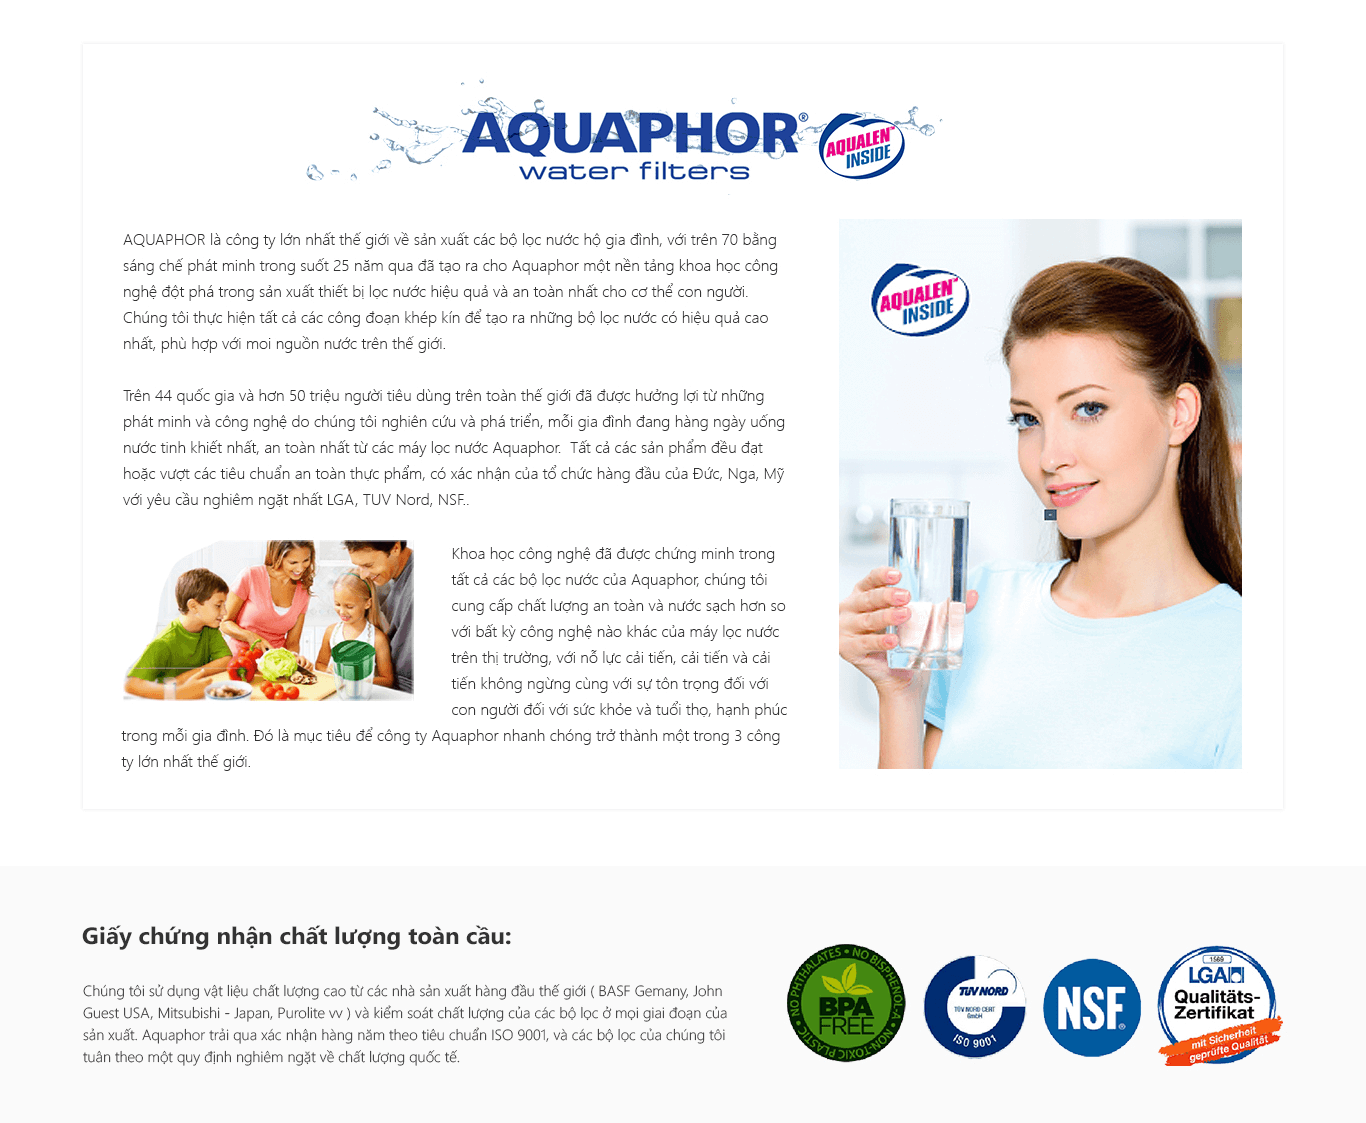 Máy Lọc Nước Aquaphor Modern đạt nhiều chứng nhận Quốc tế về chất lượng.